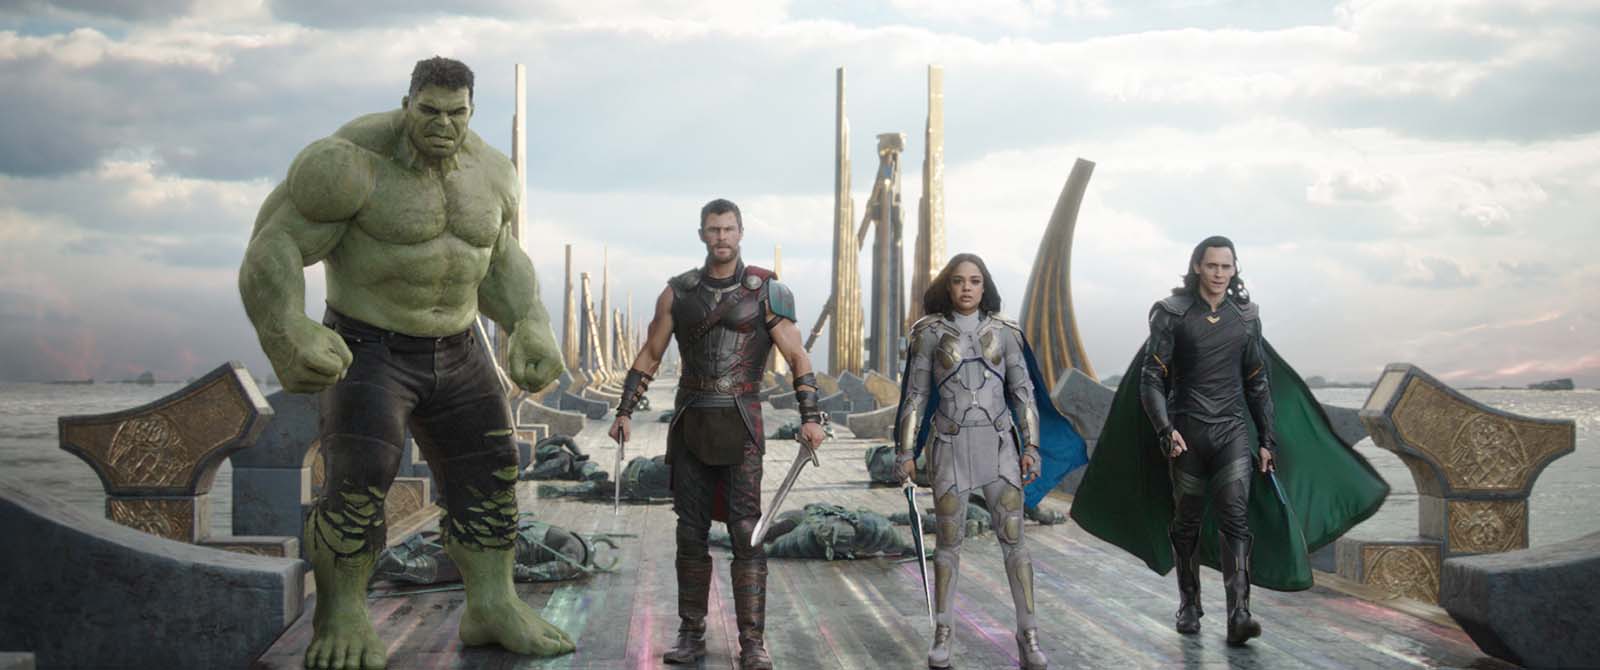 Thor: Ragnarok | Um marco eletrizante e cômico na história do heroi